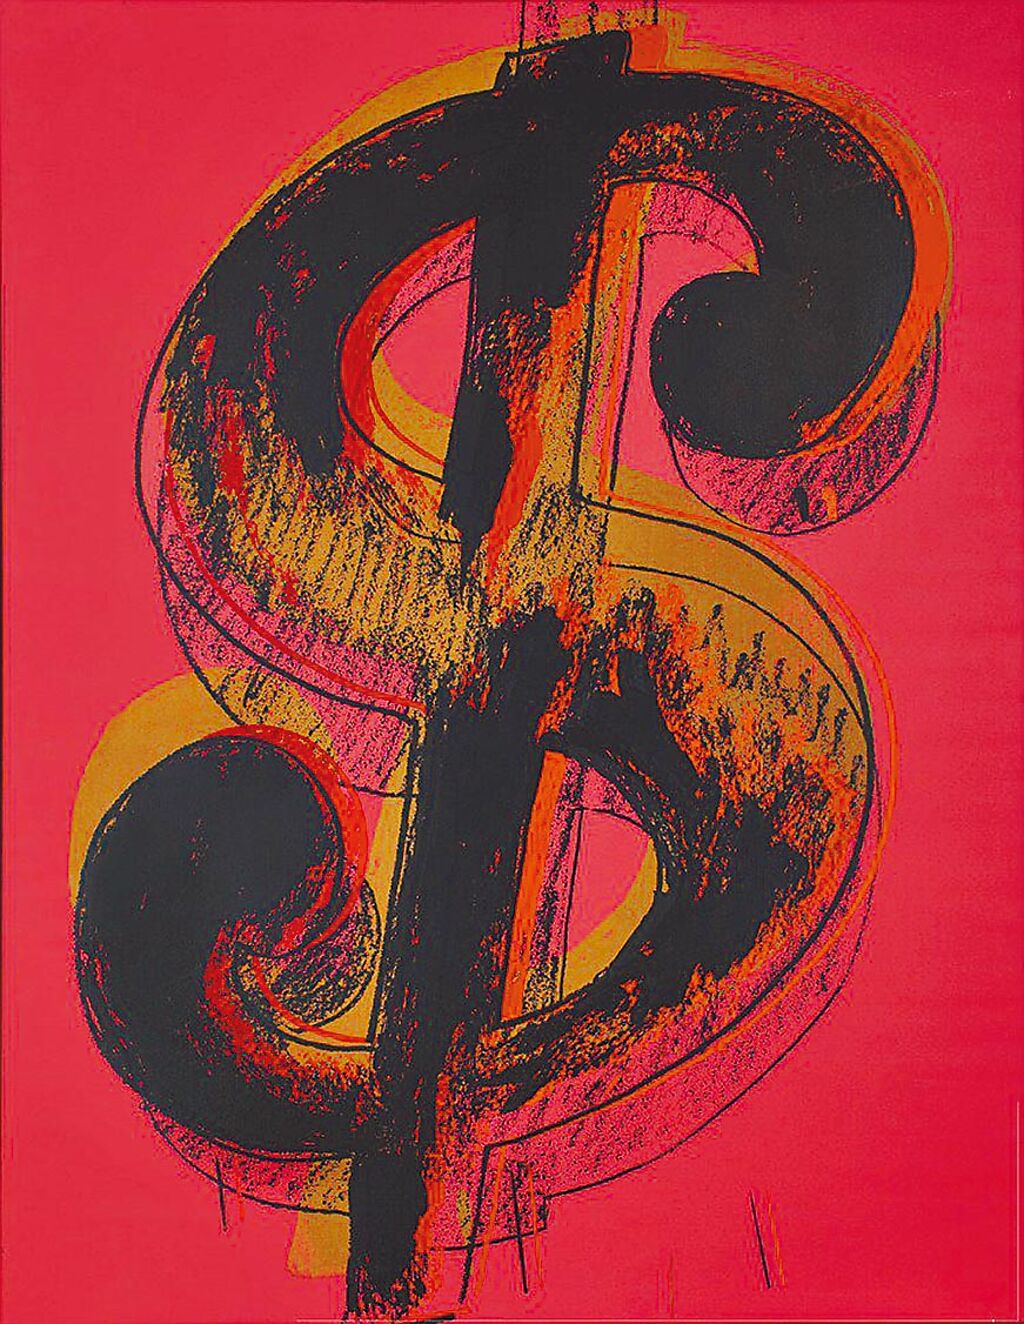 安迪沃荷的《美元符號》畫作與嘻哈炫富文化十分吻合。（Christie's提供）